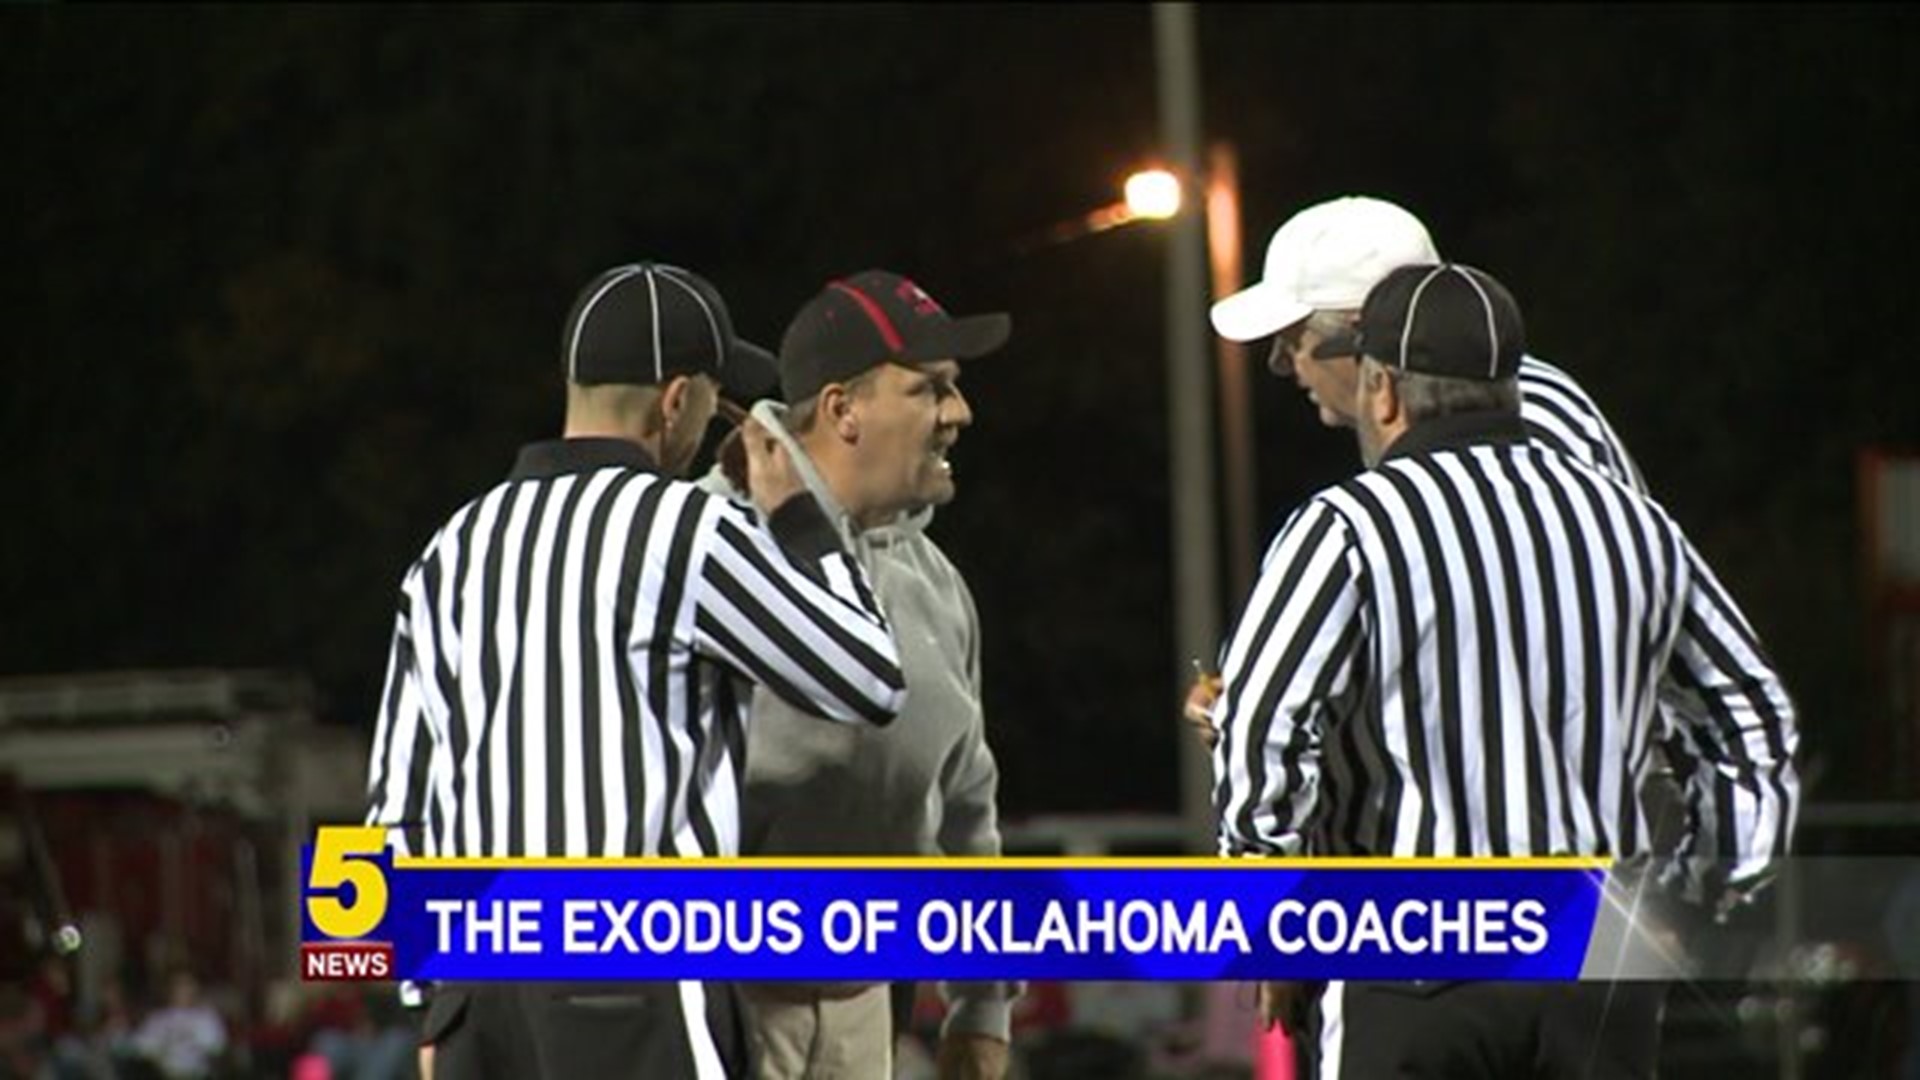 The Exodus of Oklahoma Coaches